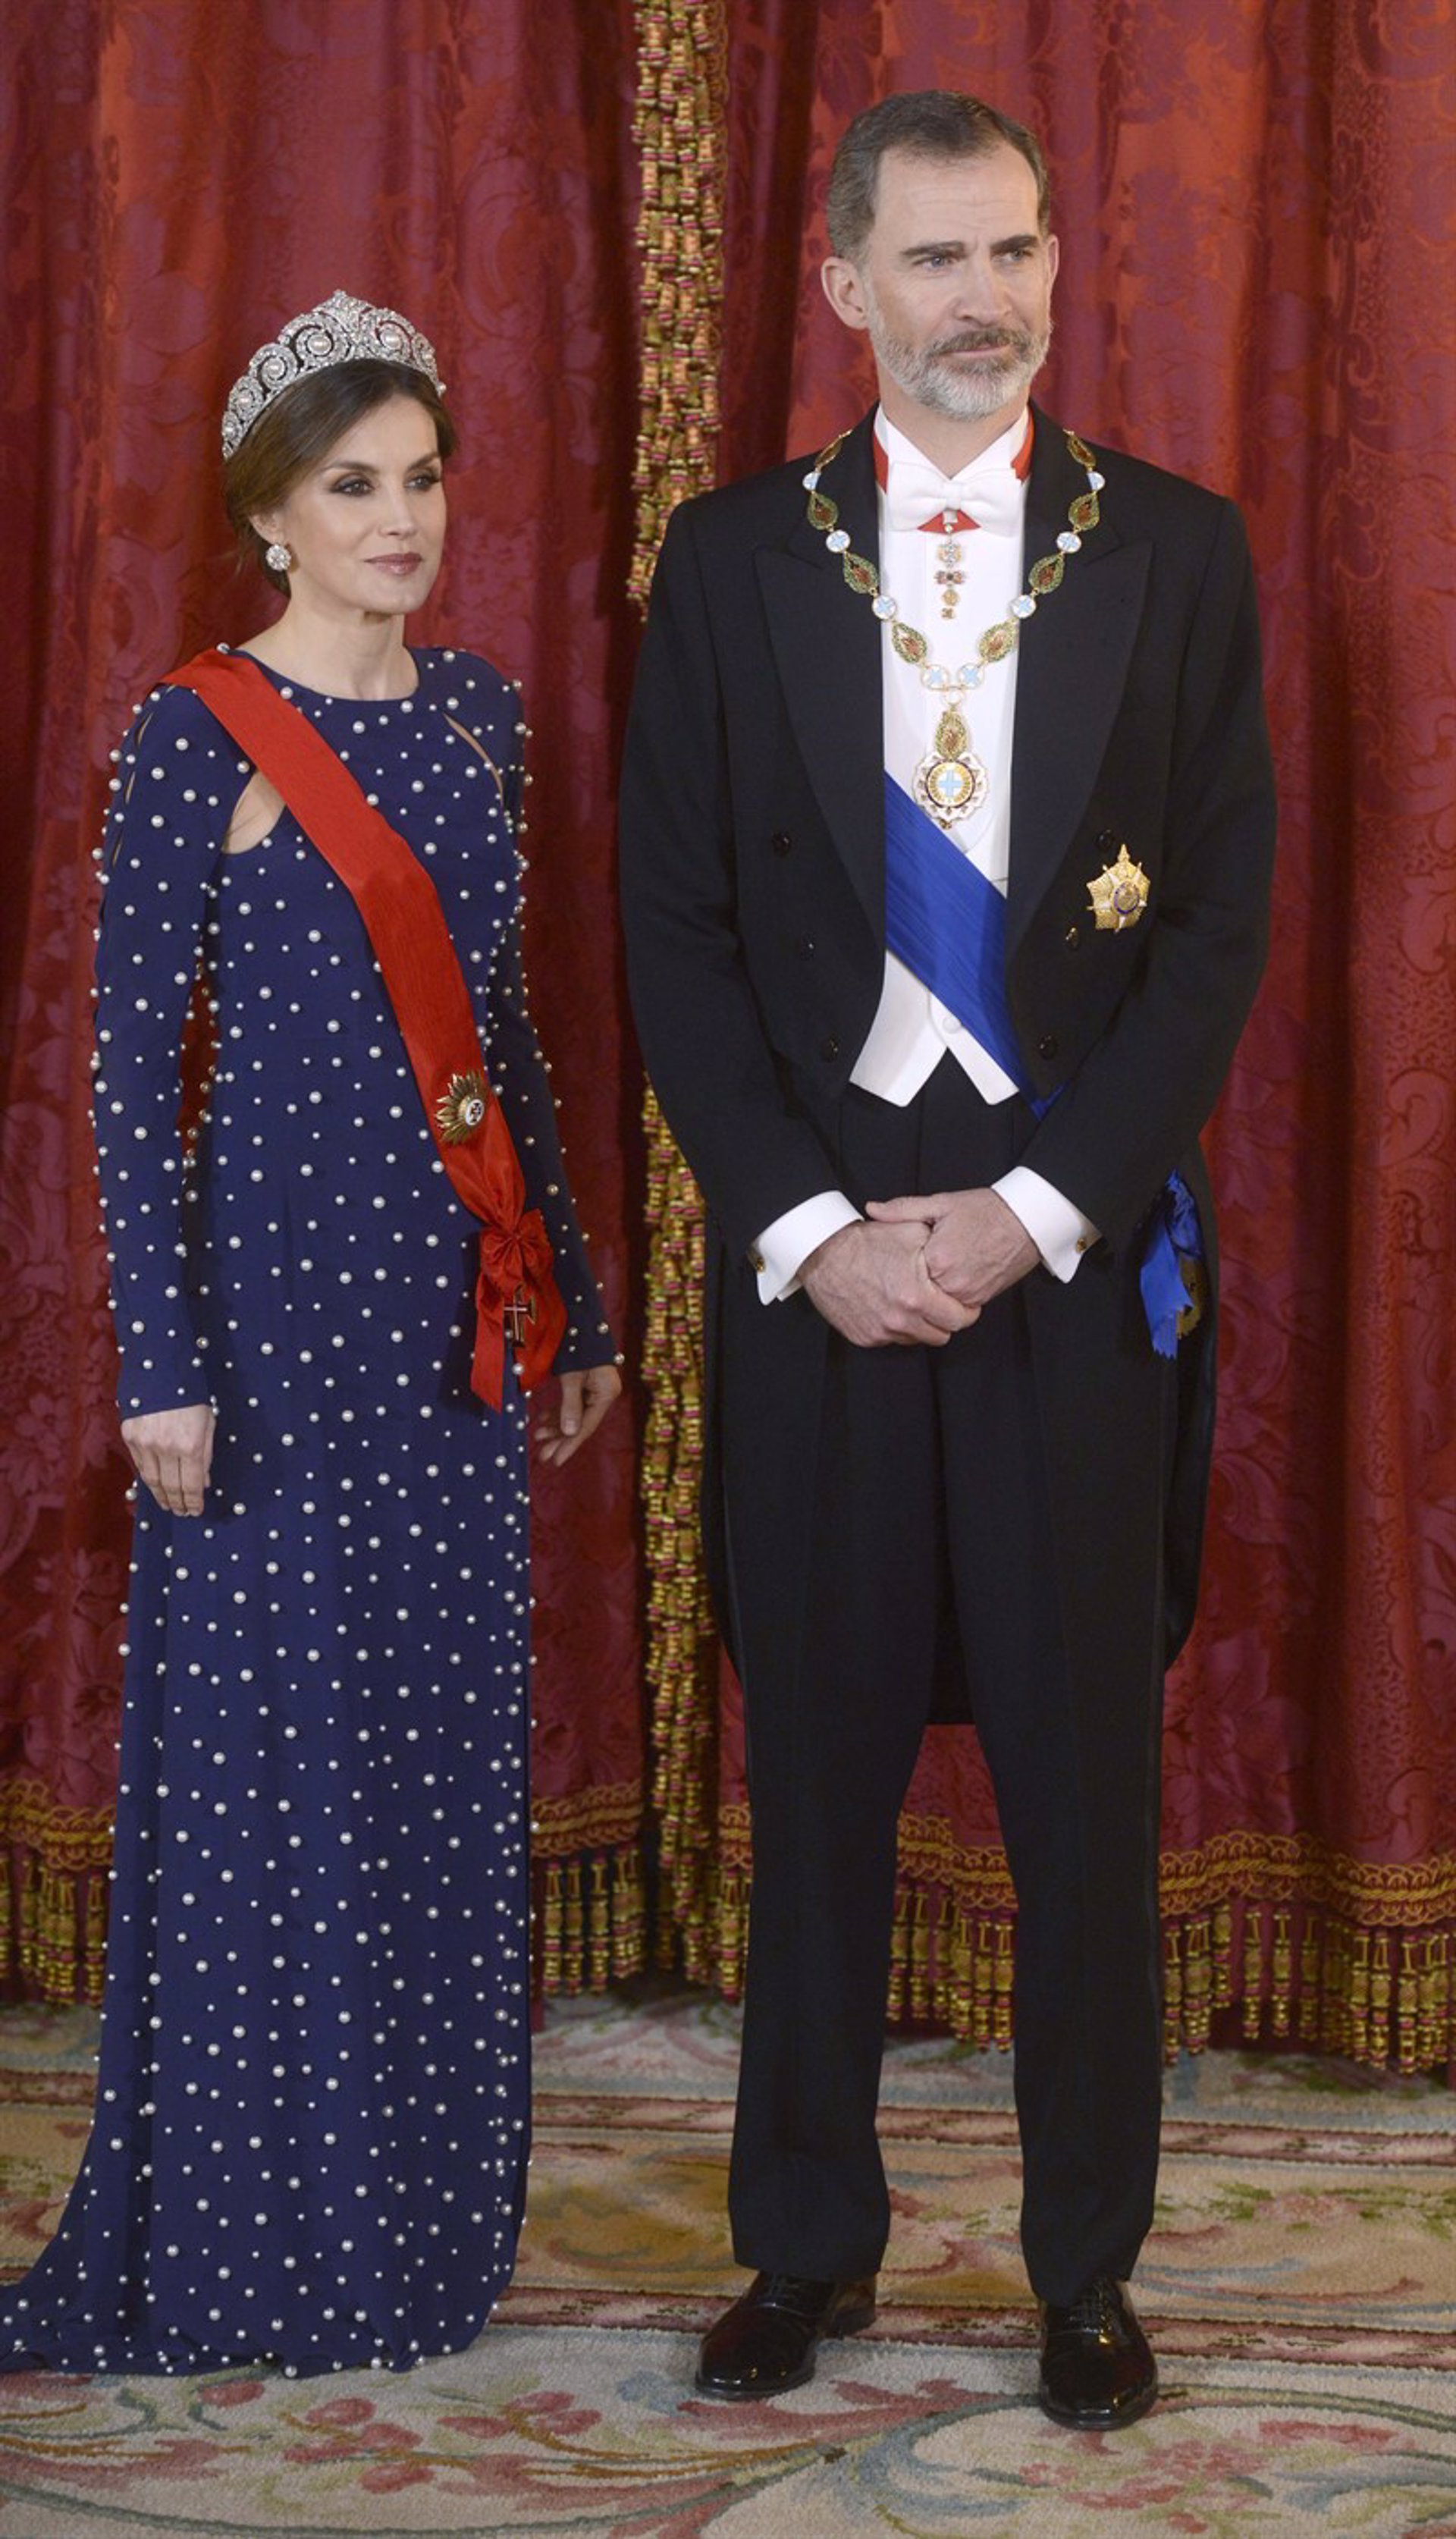 La Reina Letizia de Ana Locking en la cena al presidente de Portugal 2018